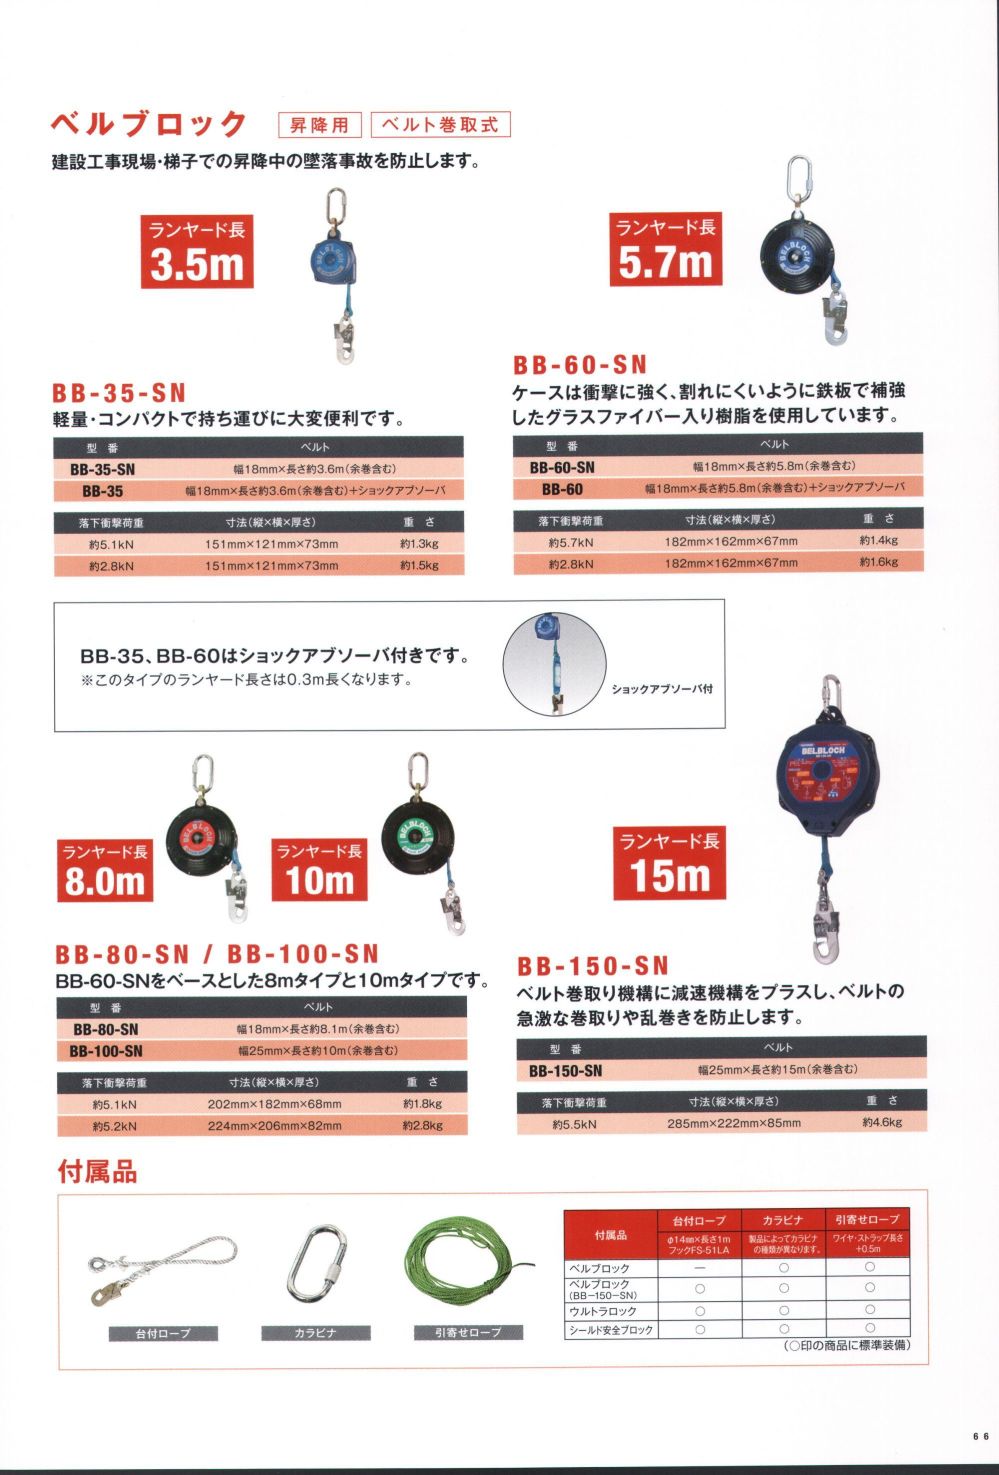 ユニフォーム1 藤井電工の一般高所作業用安全帯 BB-100-SN